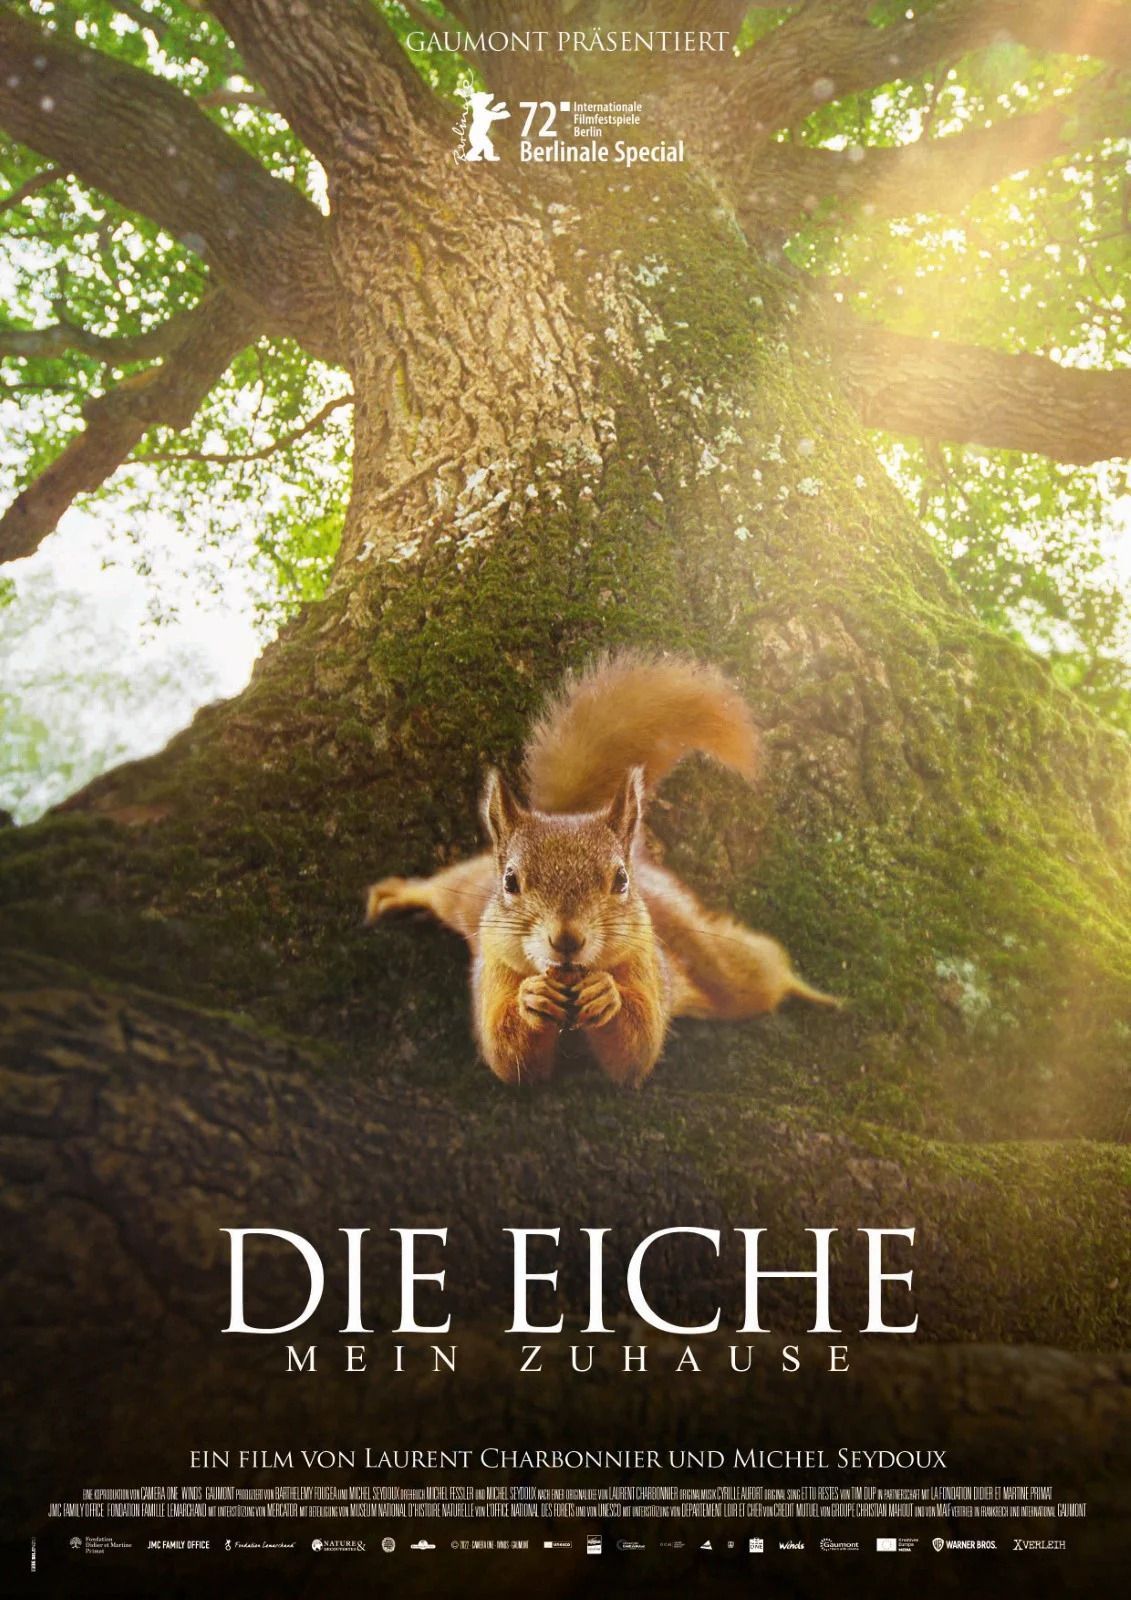 Aus der Reihe VHS-Kino "Die Eiche - Mein Zuhause" am 25.09.24